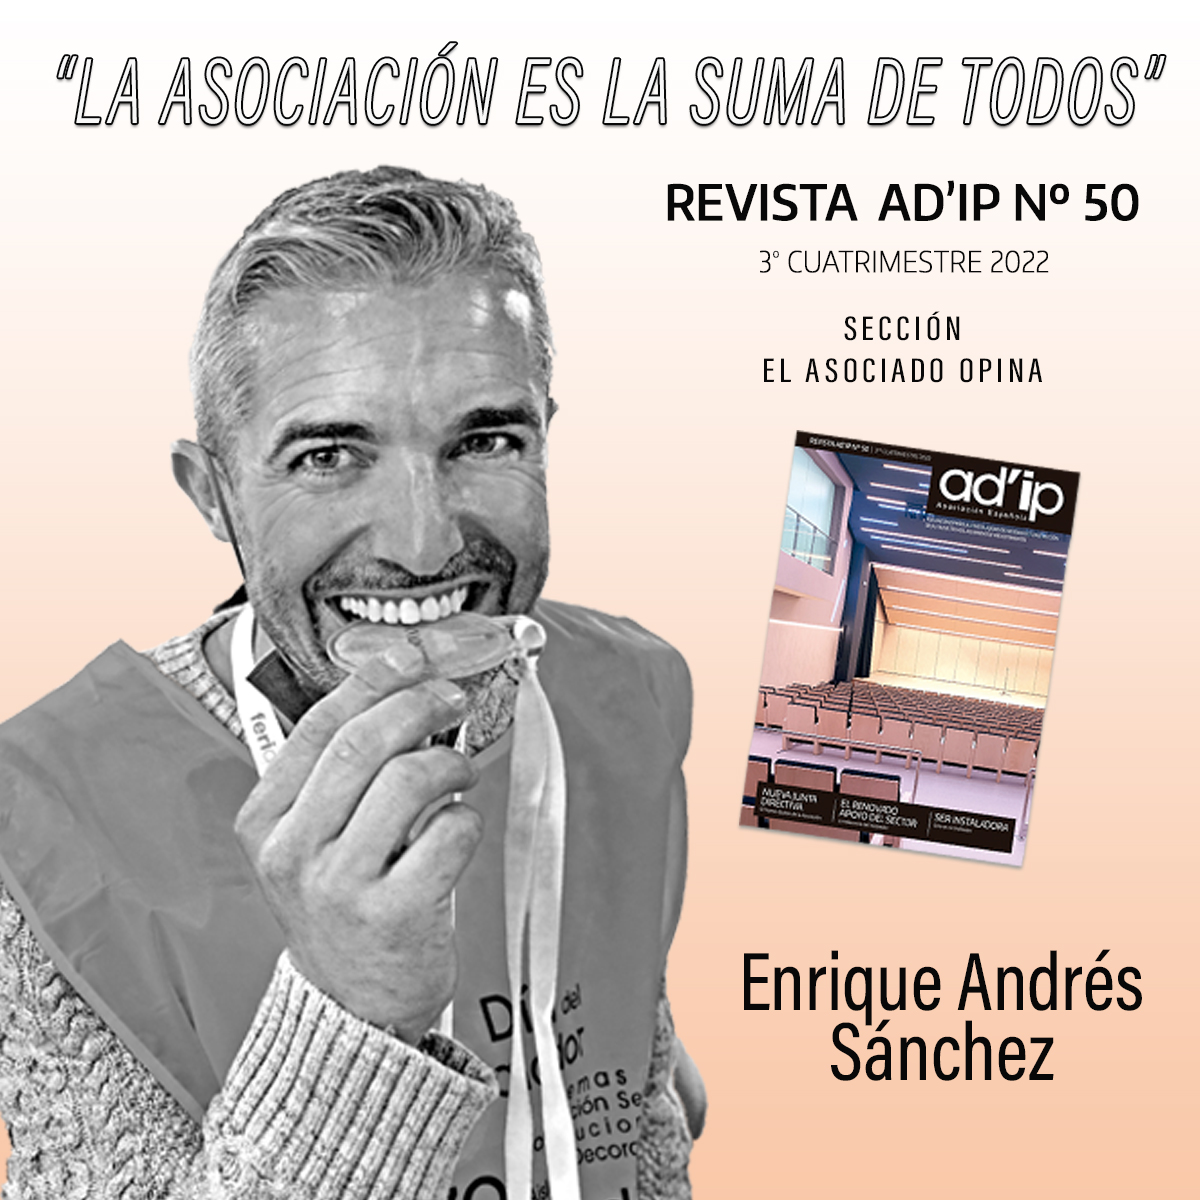 REVISTA-AD'IP-50-ENRIQUE-ANDRÉS-SÁNCHEZ-EL-ASOCIADO-OPINA-1200